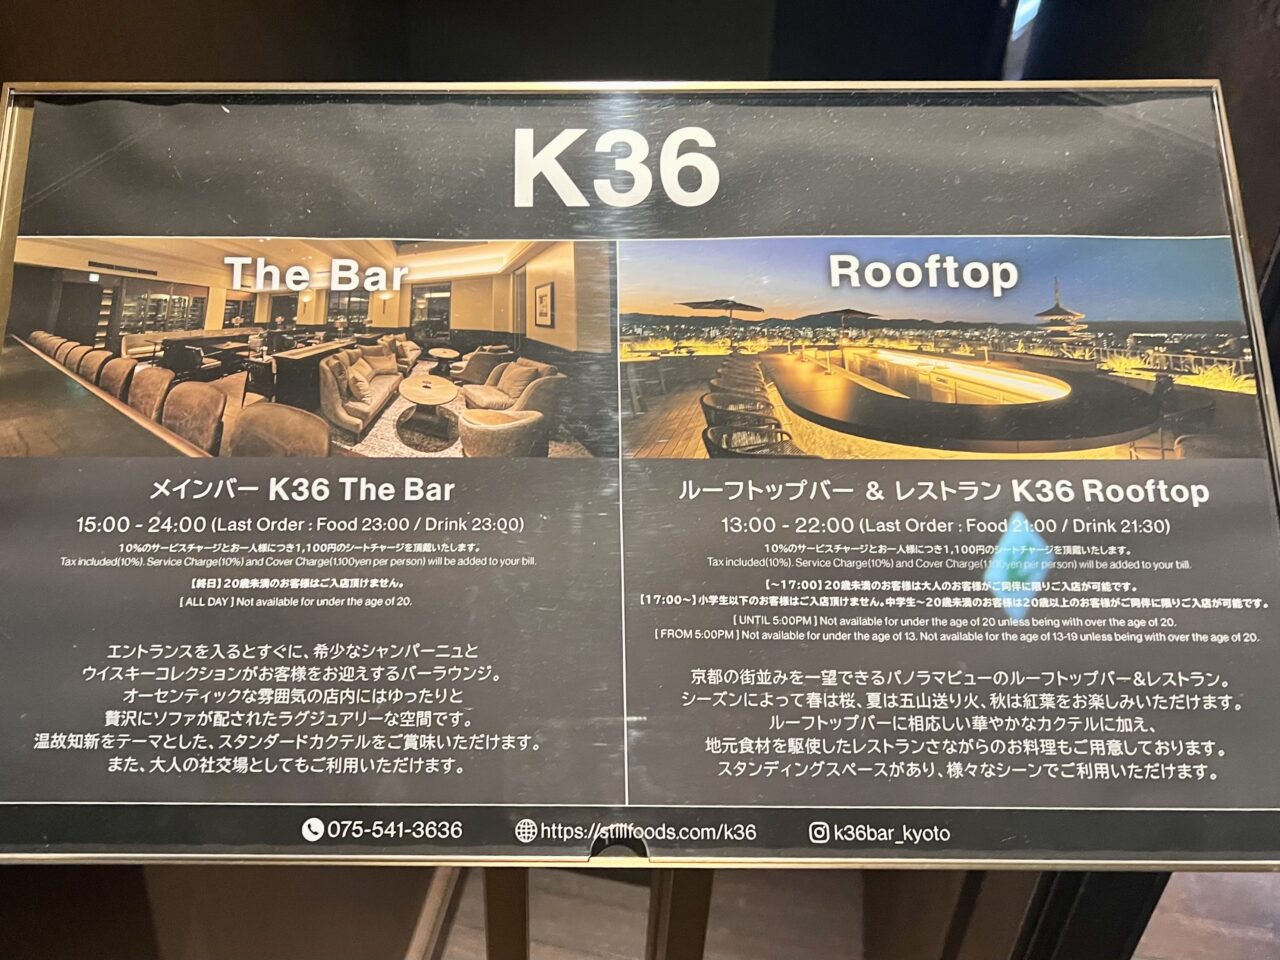 ザ・ホテル青龍京都清水のルーフトップバーk36のTheBarとRoohtop